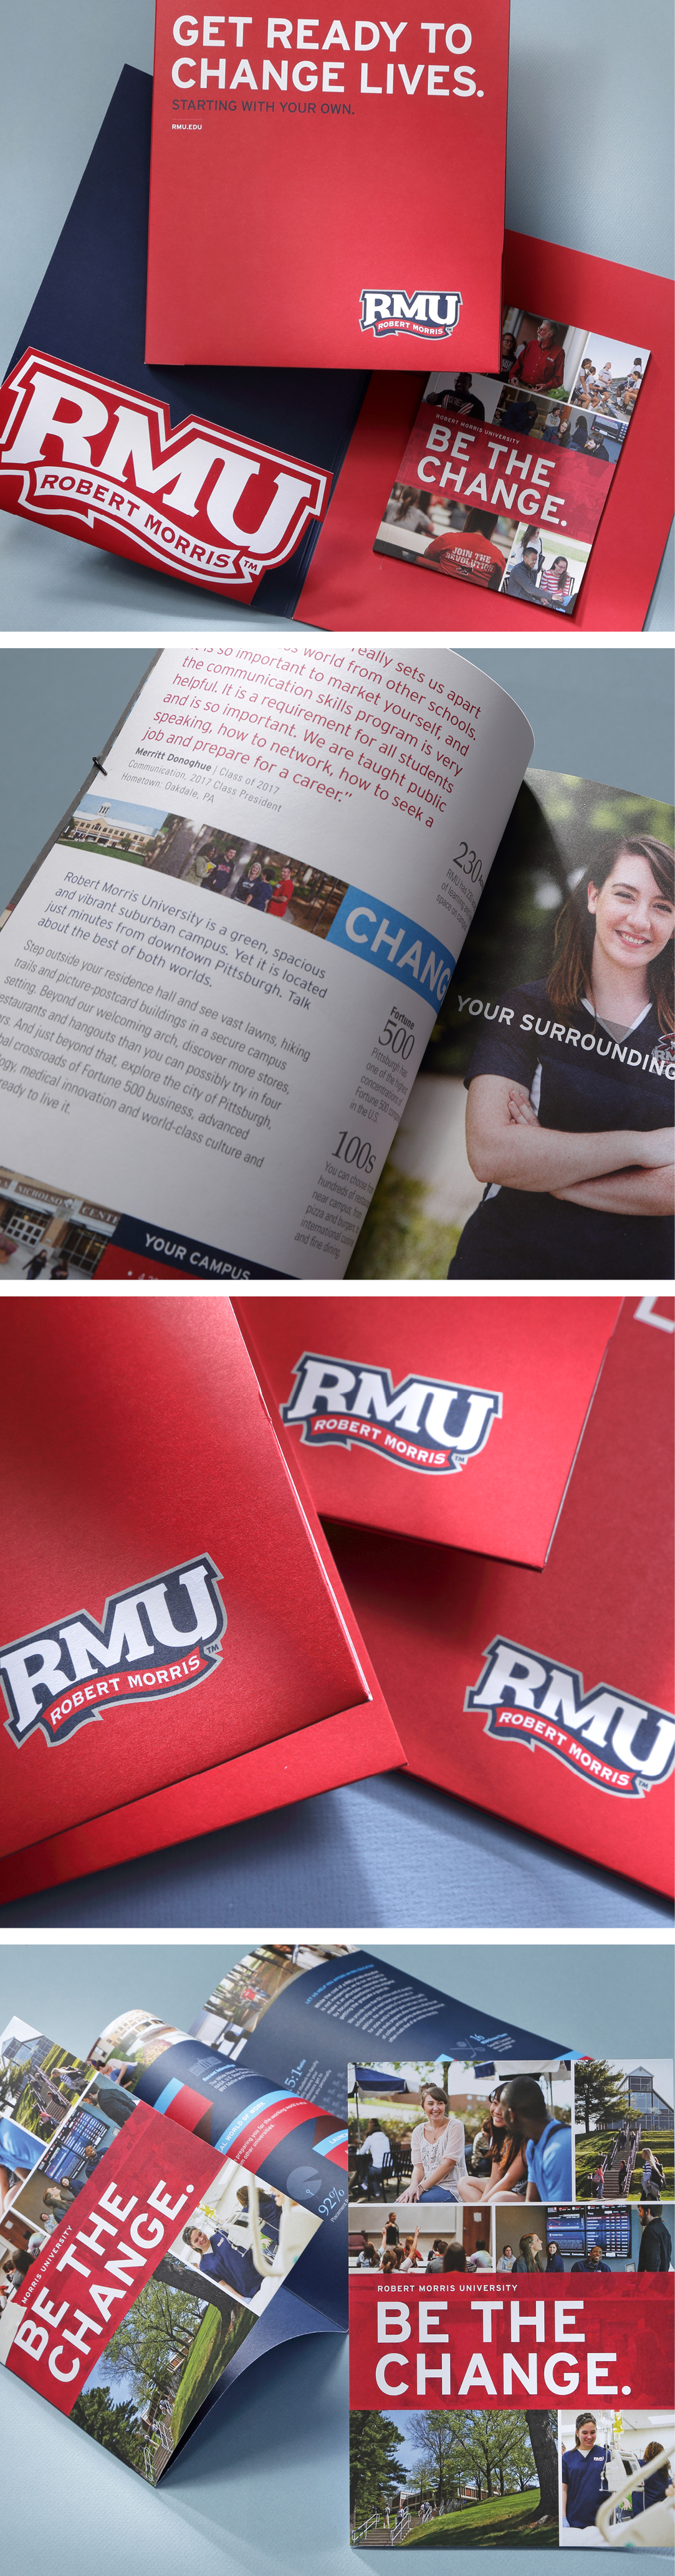 Robert Morris University Marketing Brochures